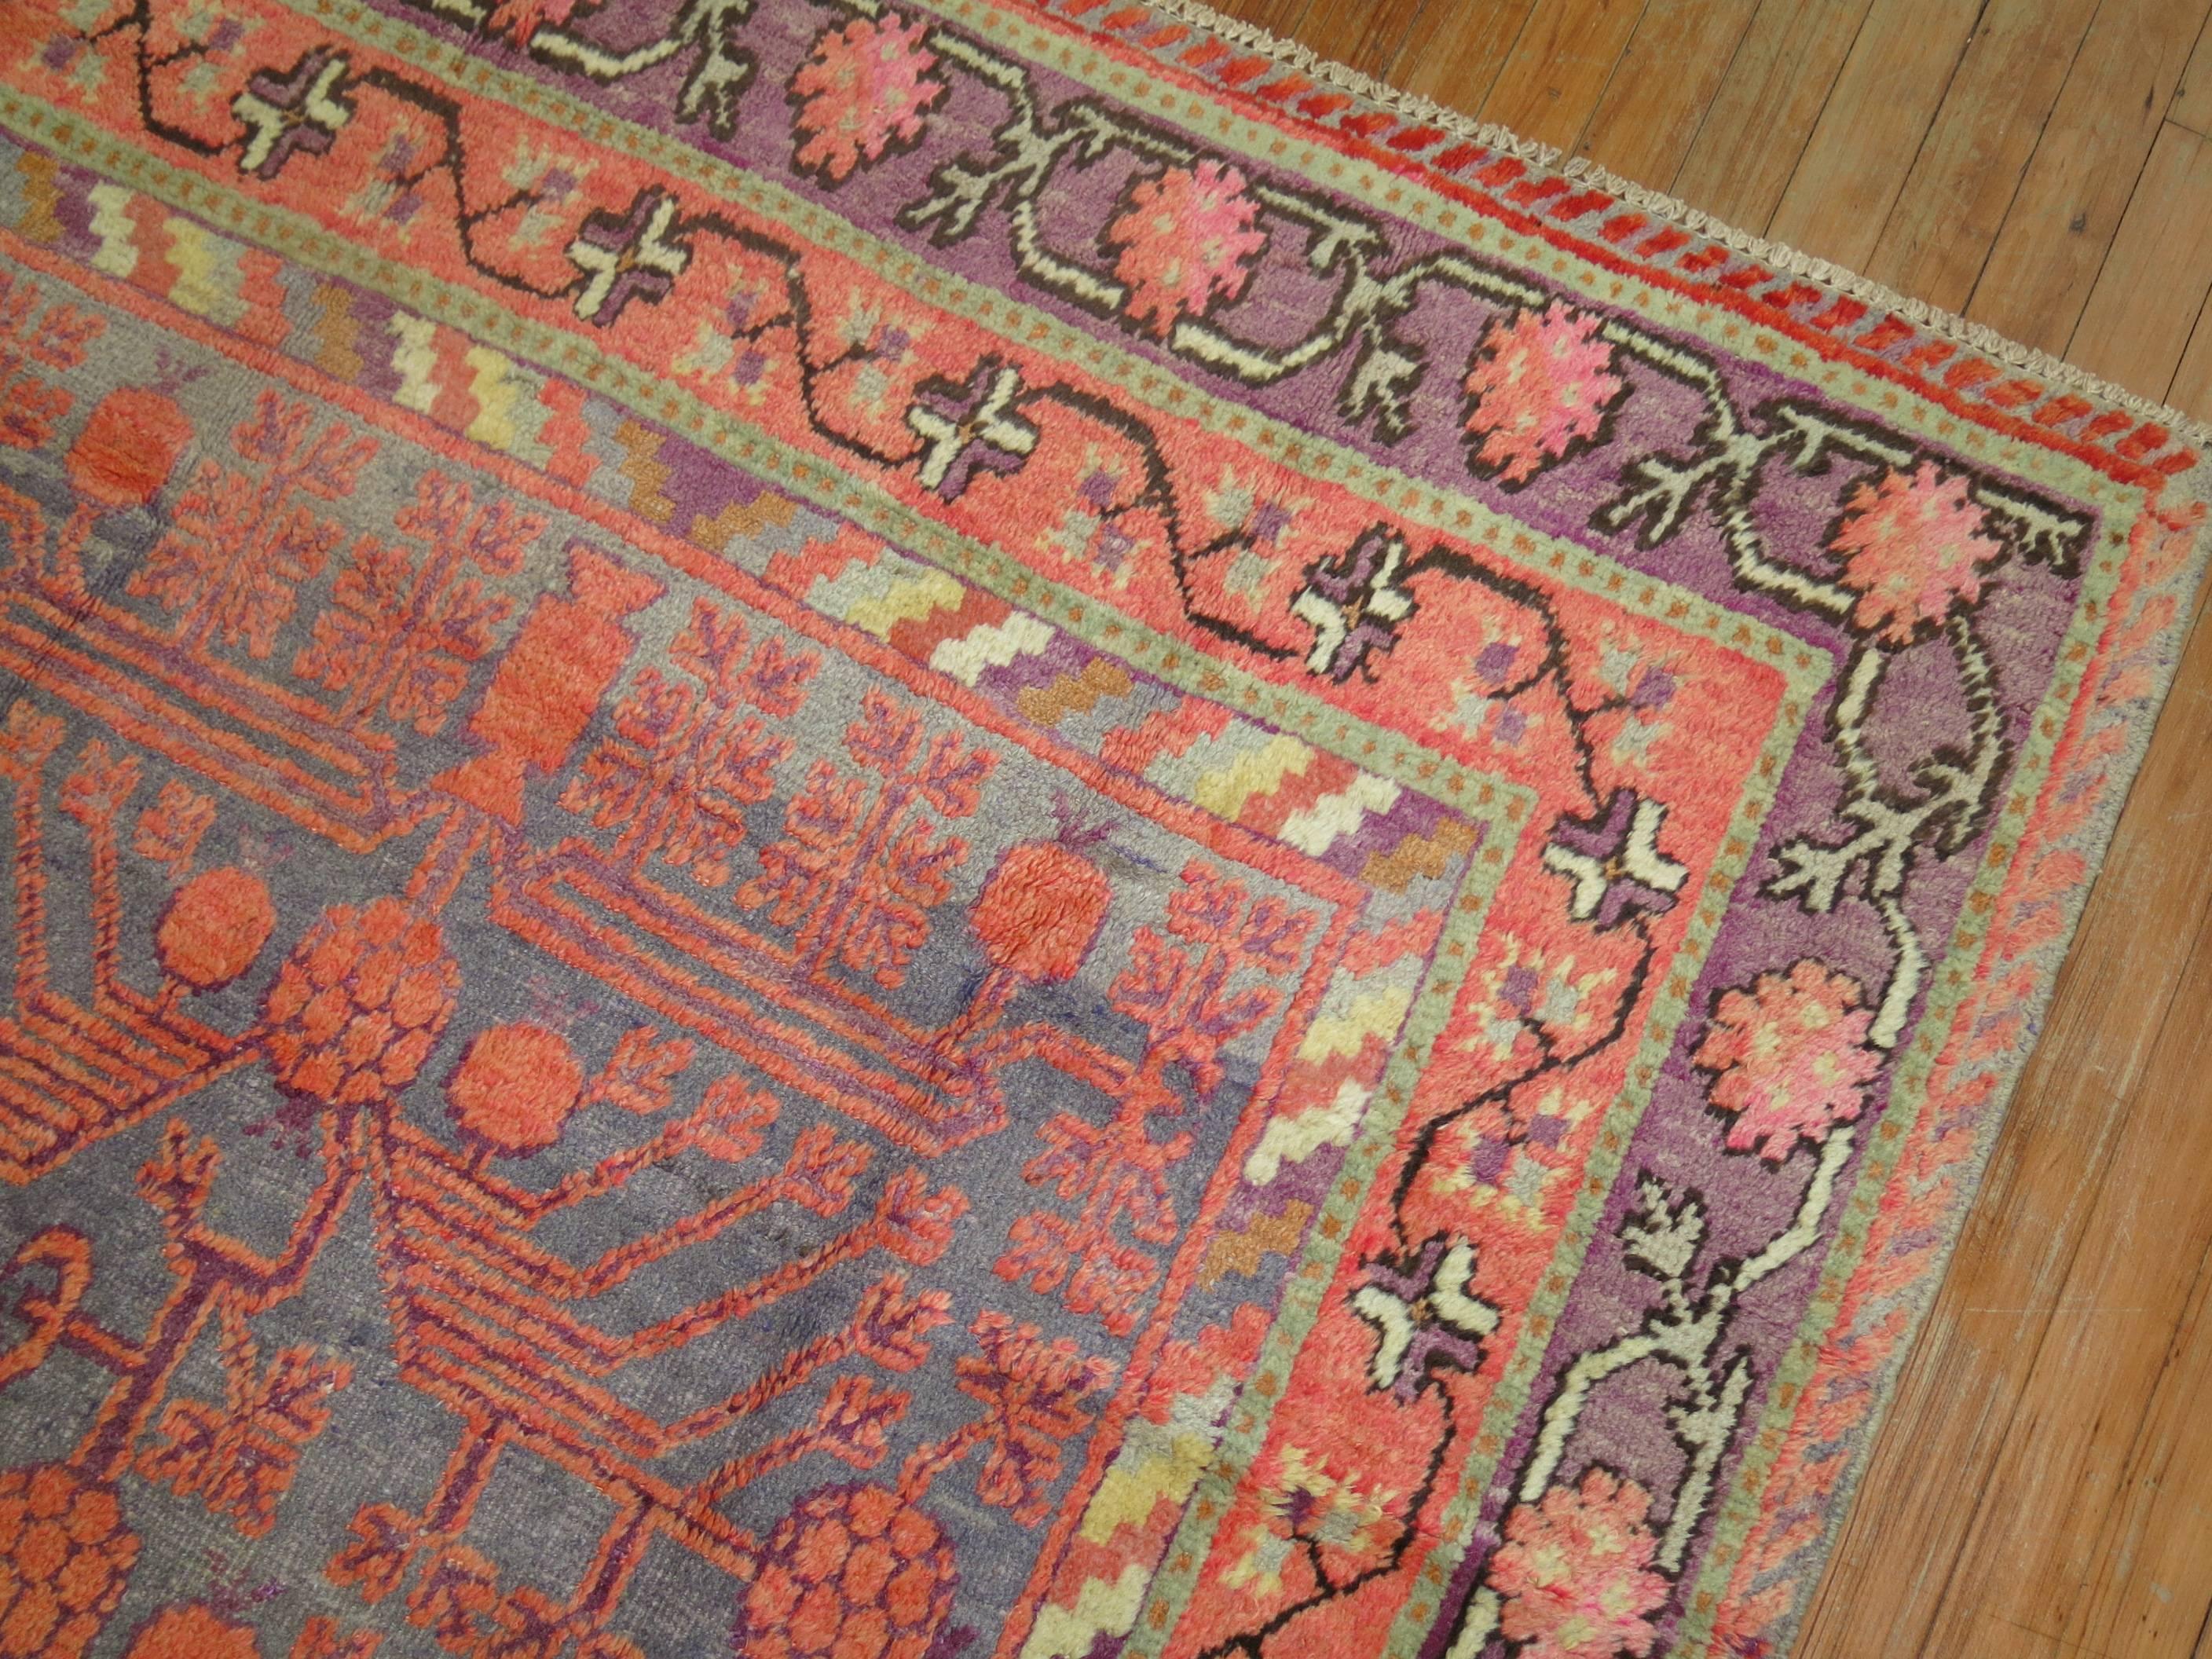 Wunderschöner Khotan-Teppich aus dem frühen 20. Jahrhundert mit klassischem Granatapfelmuster, umgeben von einer Blumenbordüre. Grauer Grund, dominante Akzente in Koralle und Lila.
Durchgehend gleichmäßiger mittlerer Flor. Dieses Stück ist nicht